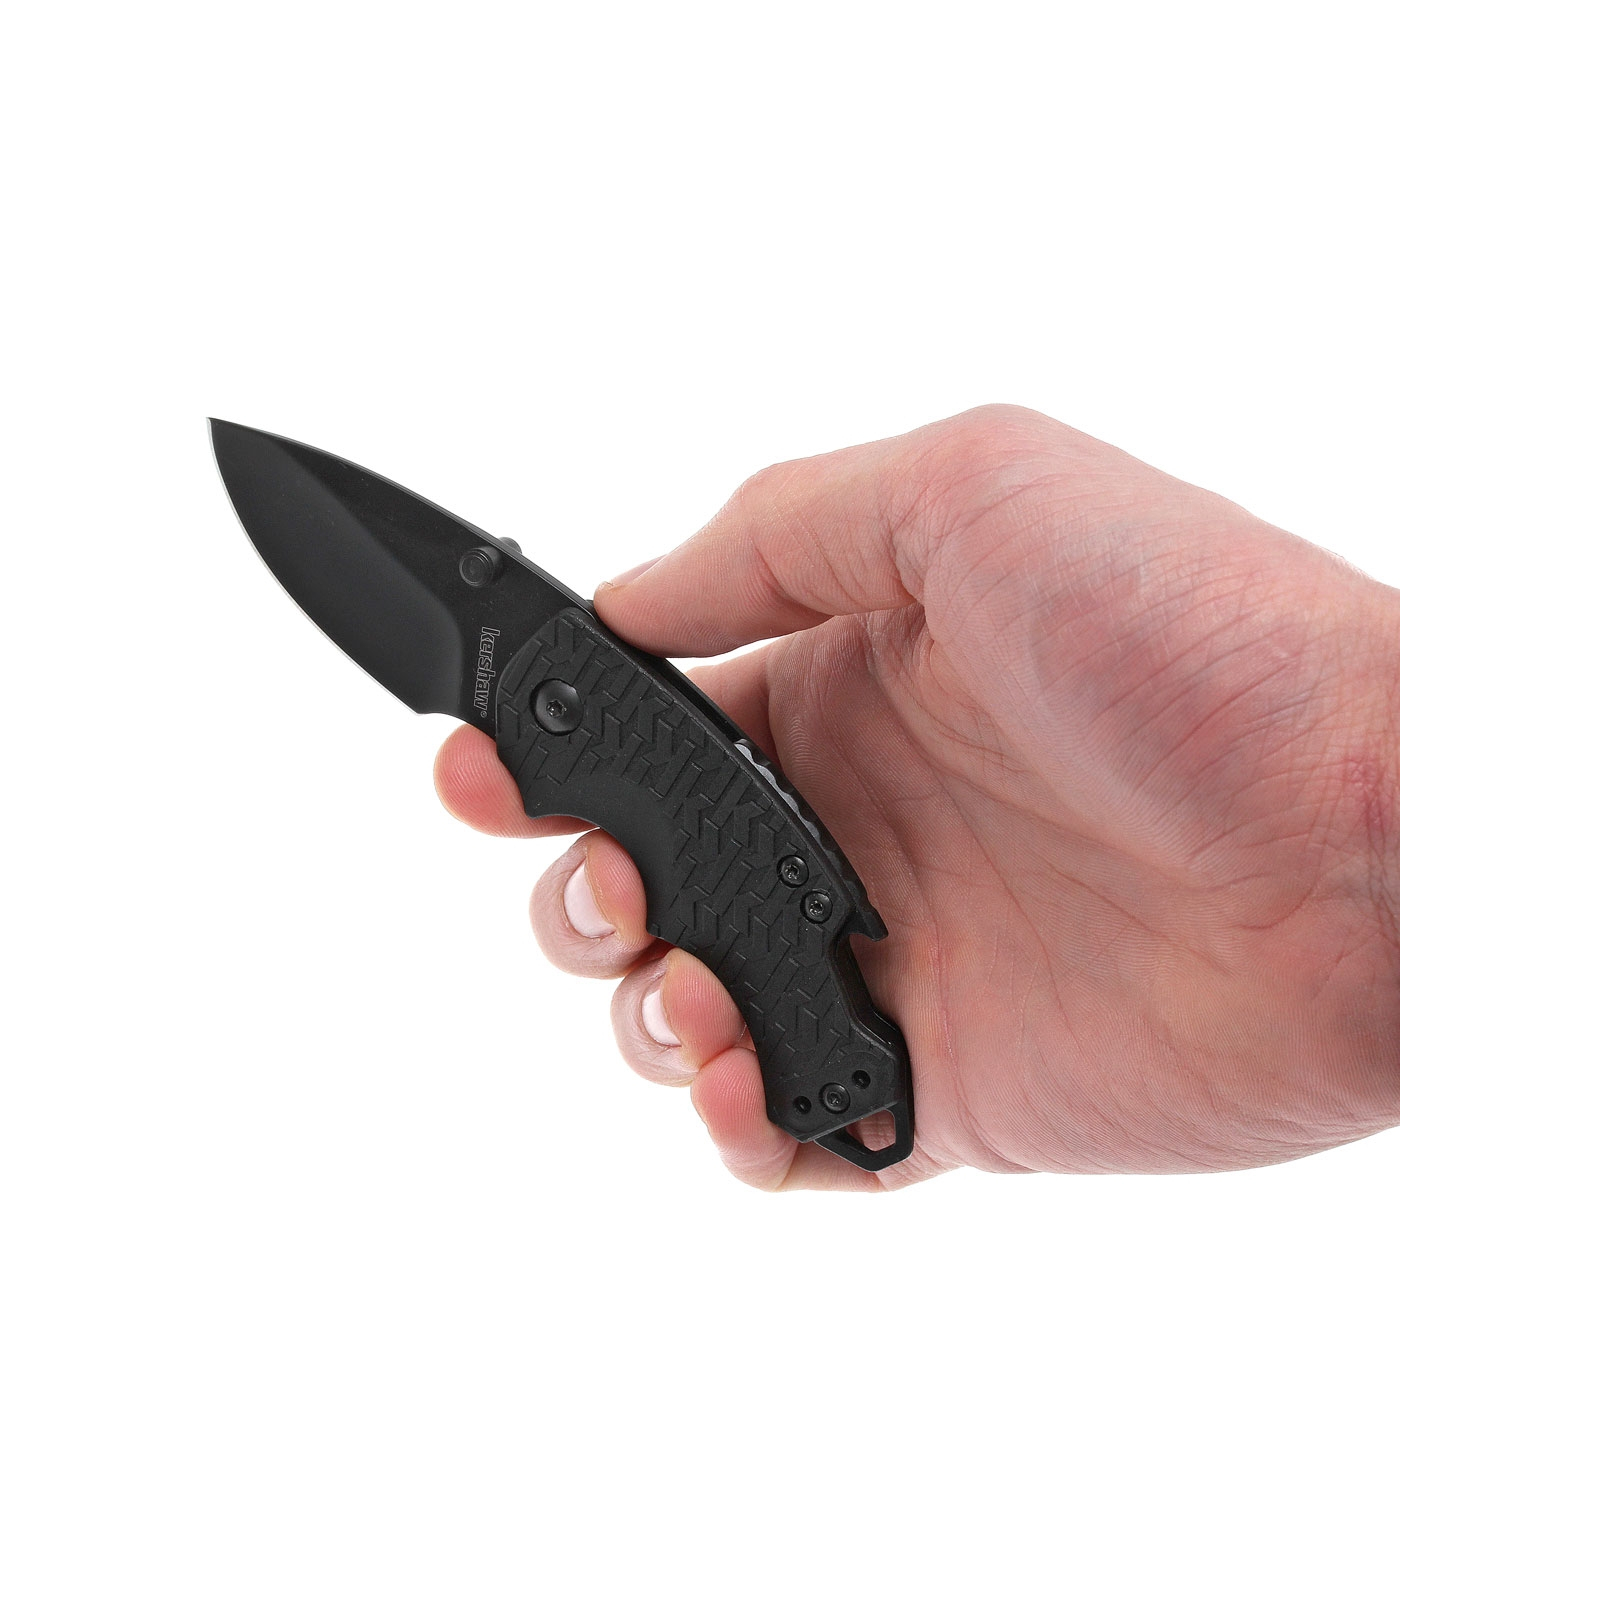 Нож Kershaw Shuffle фиолетовый (8700PURBW) изображение 8